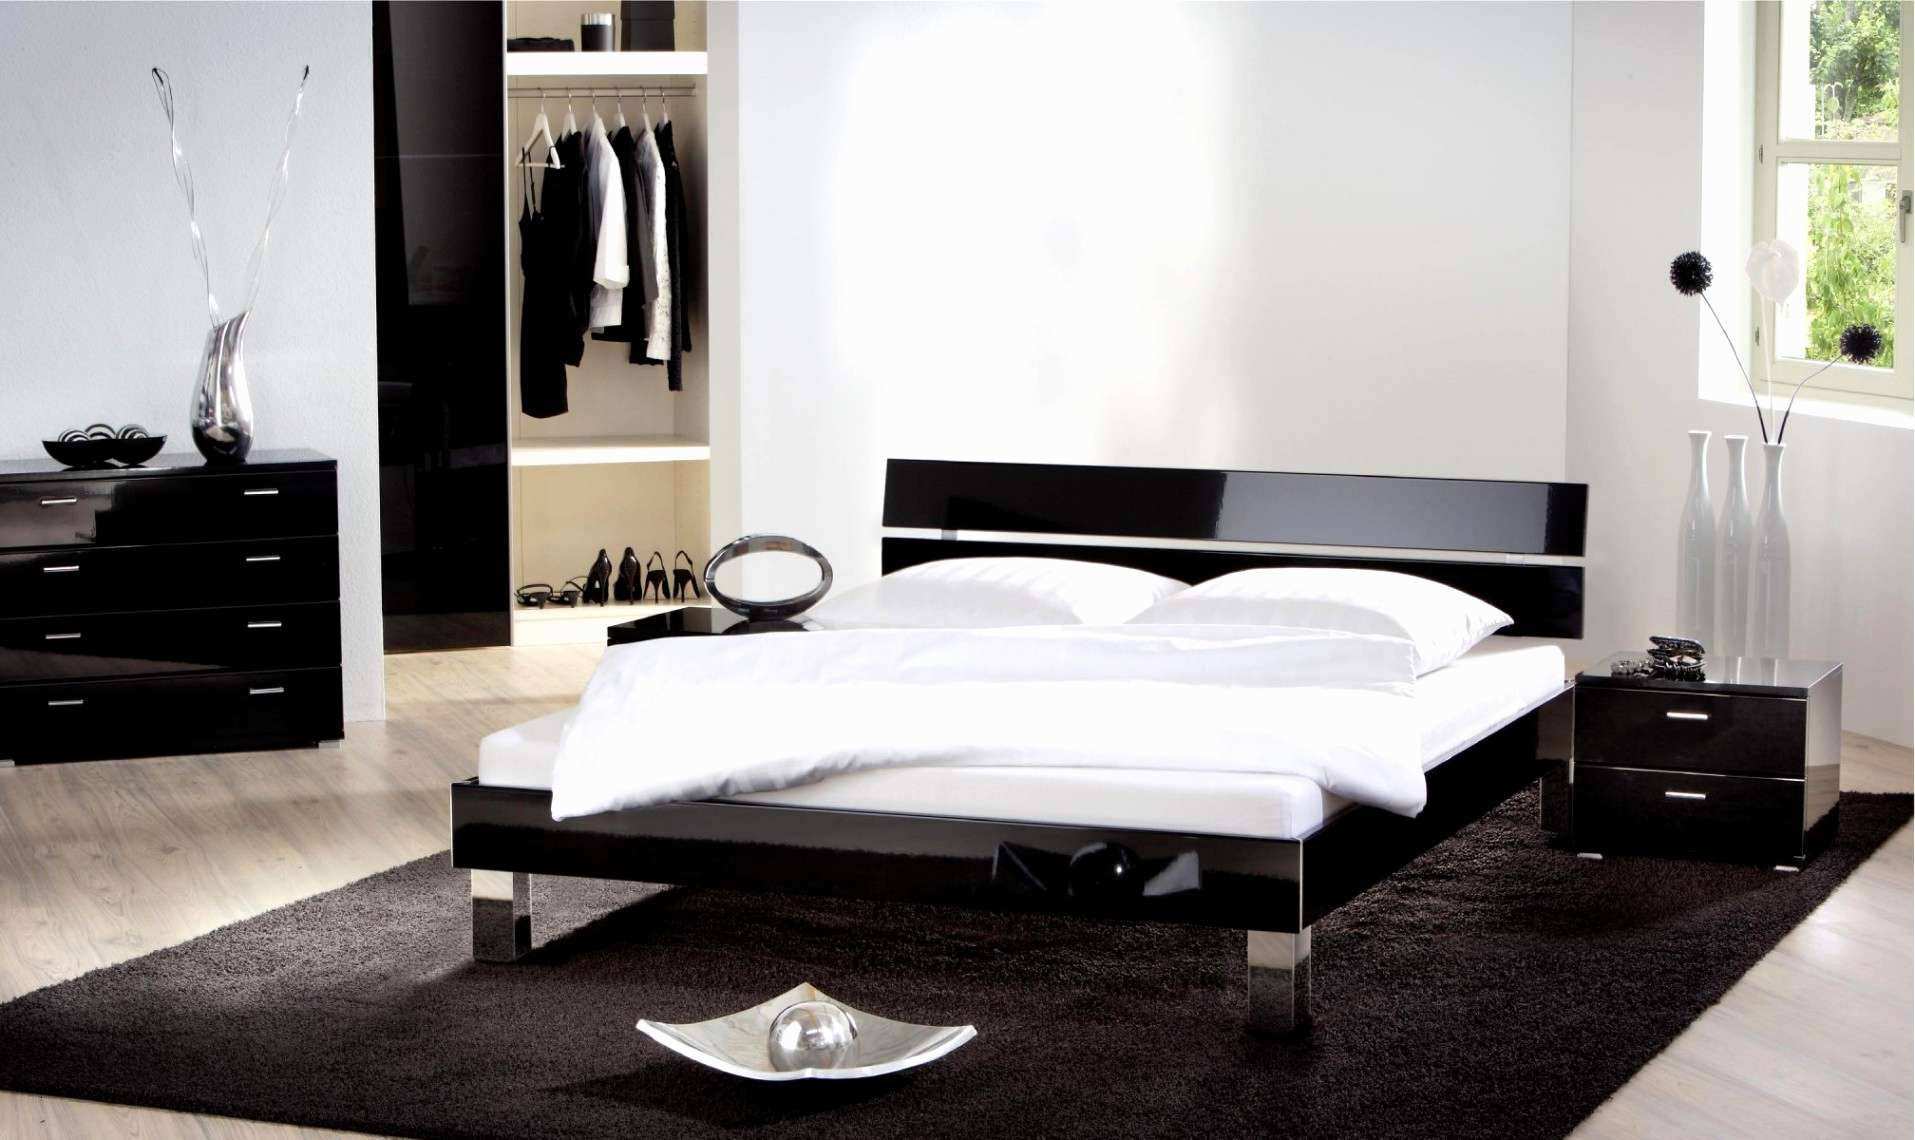 Deko Ideen Aus Holz Elegant Luxus Deko Ideen Diy attraktiv Regal Schlafzimmer 0d